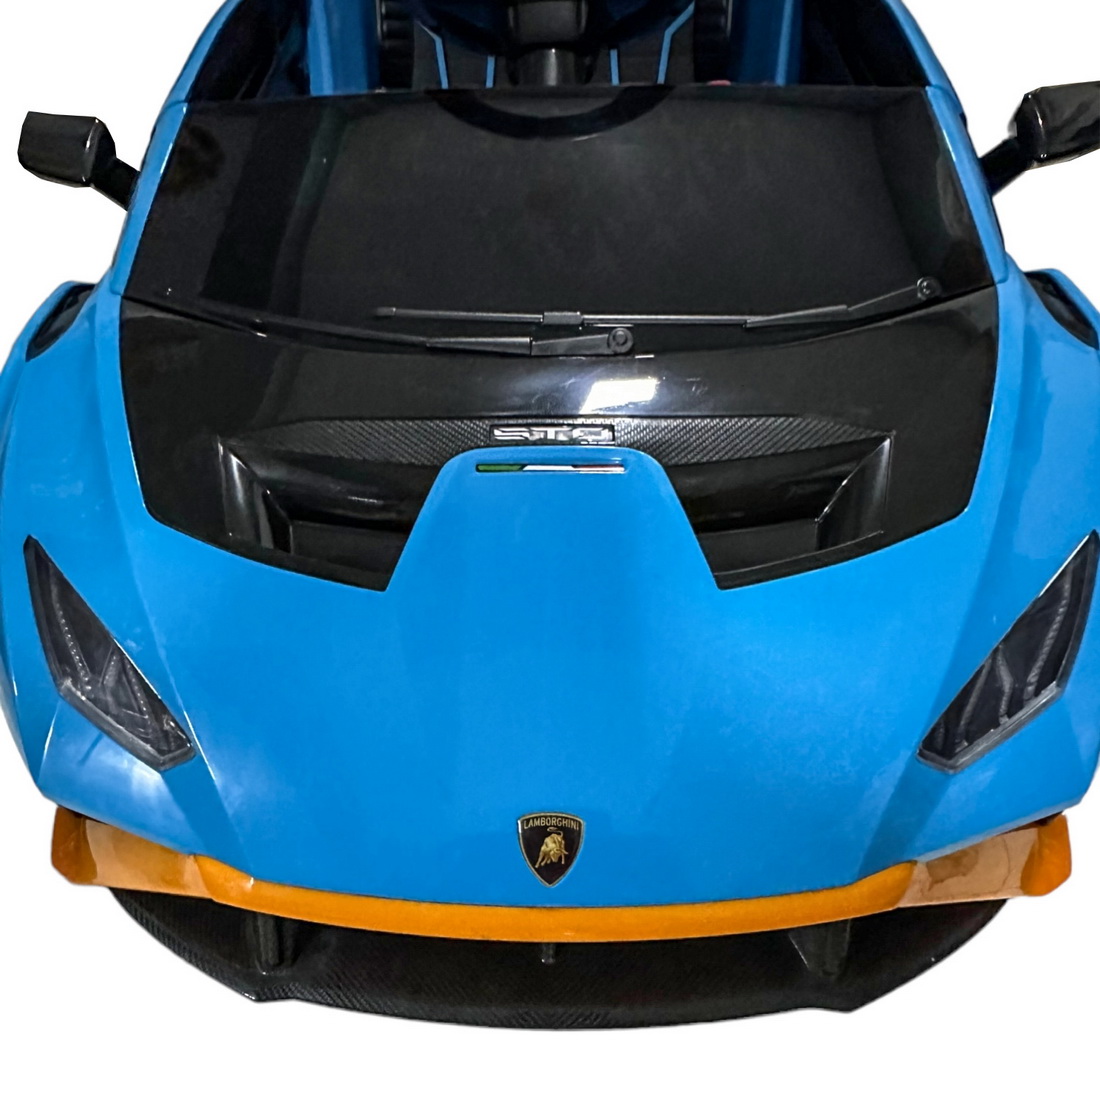 Ηλεκτροκίνητο Αυτοκίνητο Lamborghini Huracan Διθέσιο με USB Bluetooth τιμόνι με λειτουργία drift και τηλεχειριστήριο Γαλάζιο LA555BL